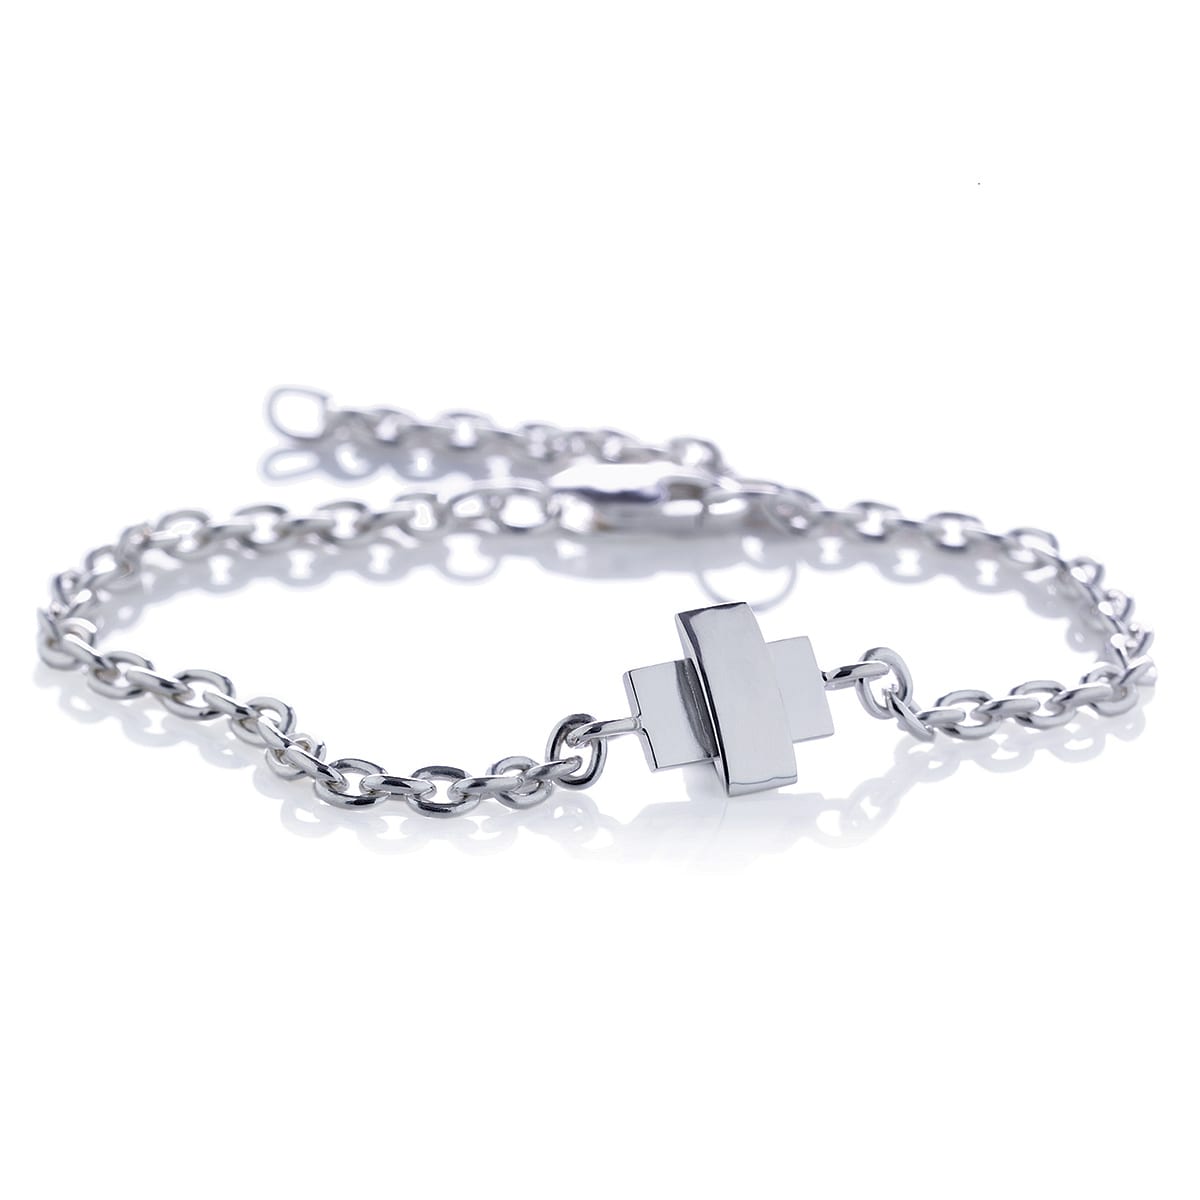 Efva_Attling_smycken_Little Cross Bracelet 14-100-00322(1)_hos_Jarl_Sandin